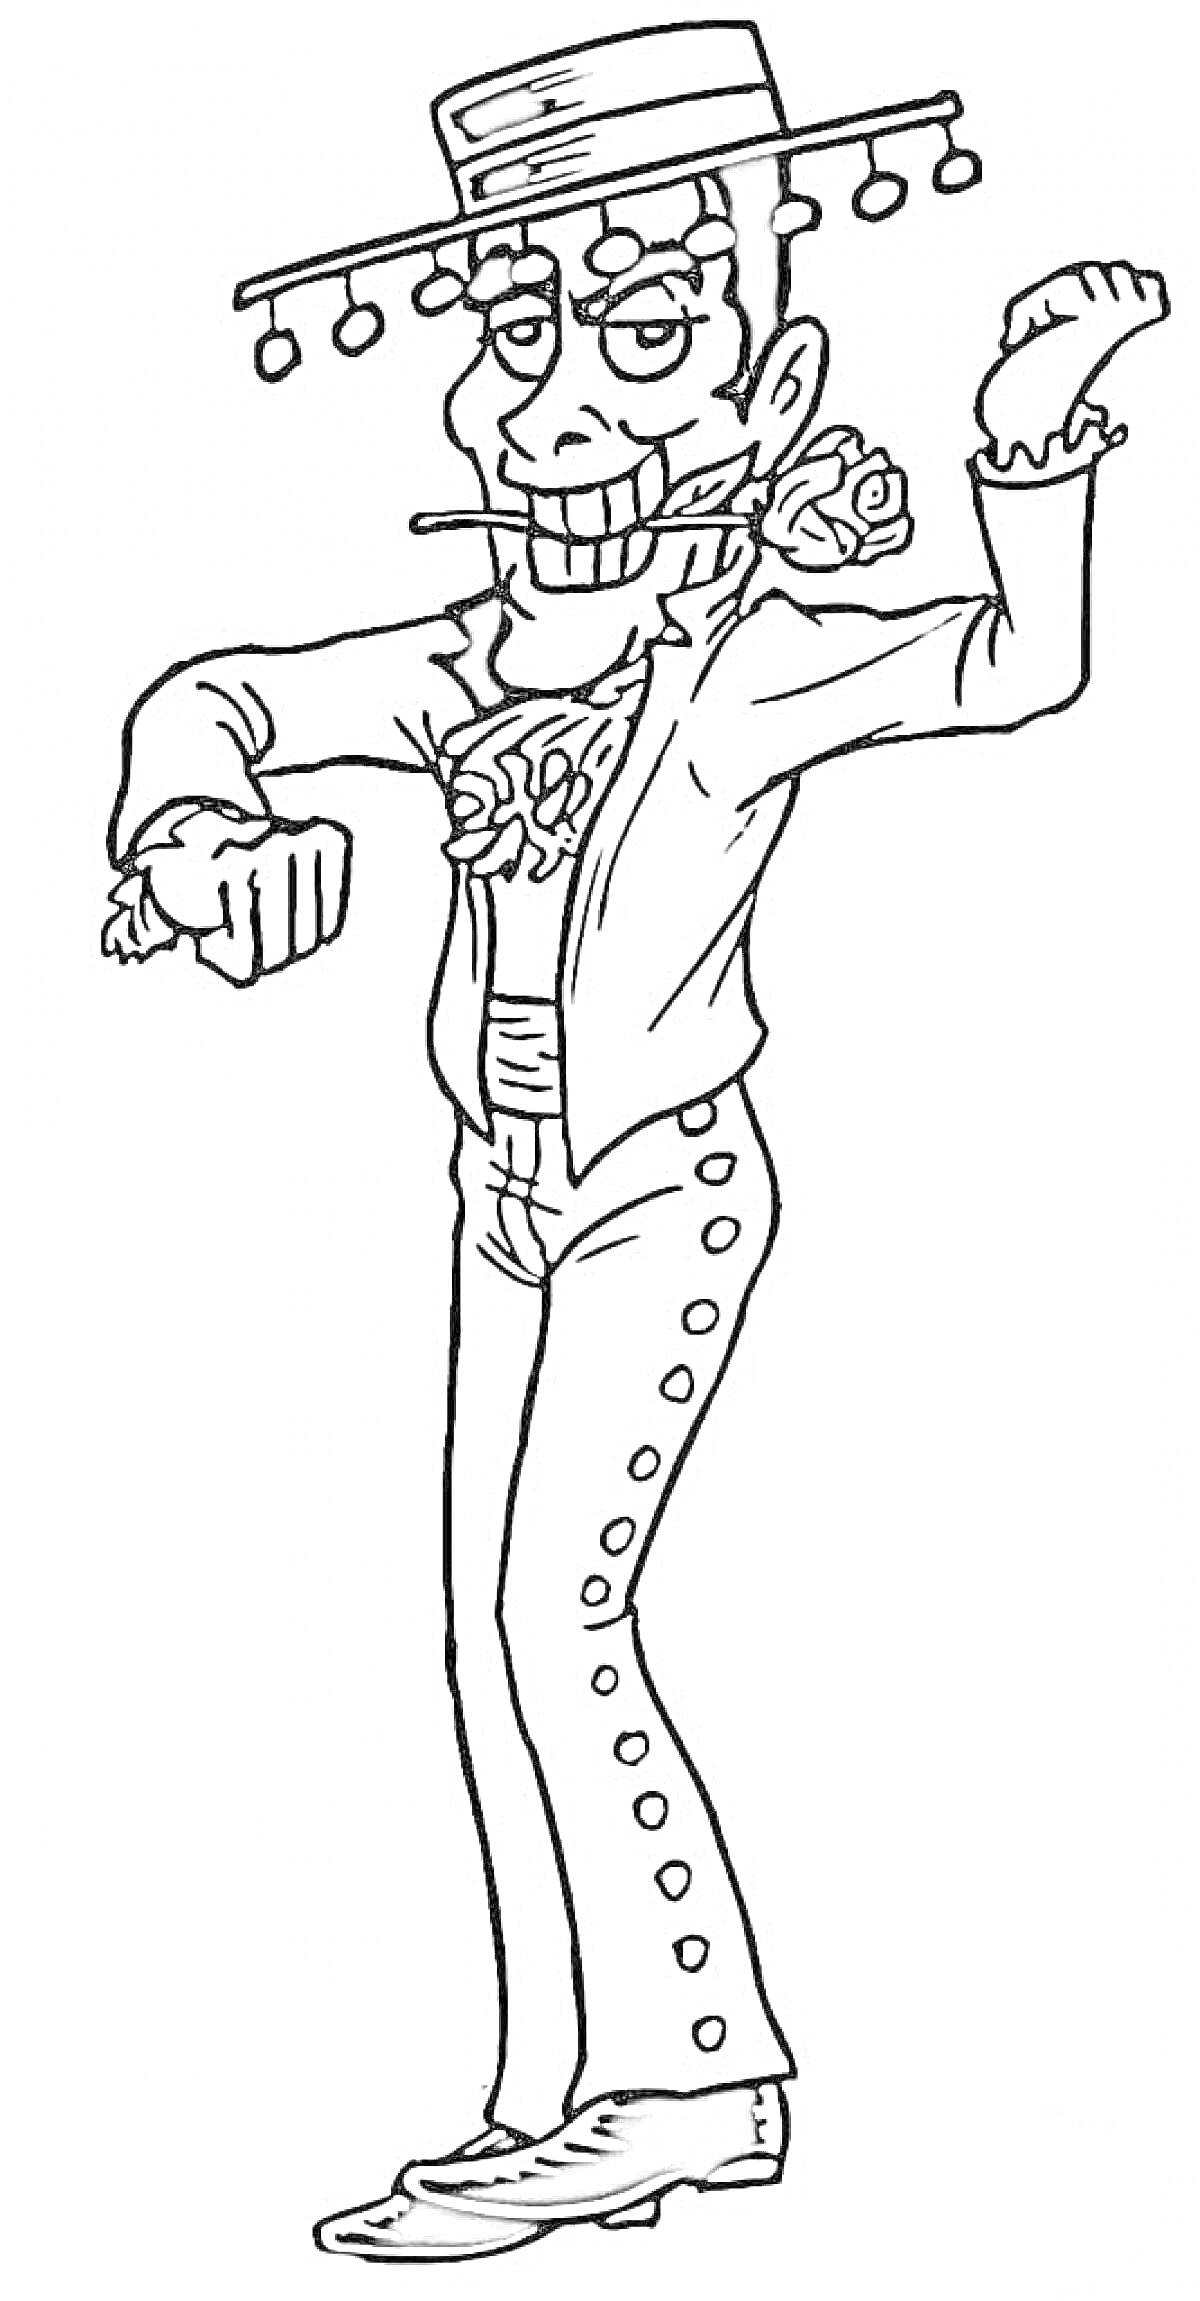 Танцующий человек в испанском костюме с шляпой, сигарой и розами